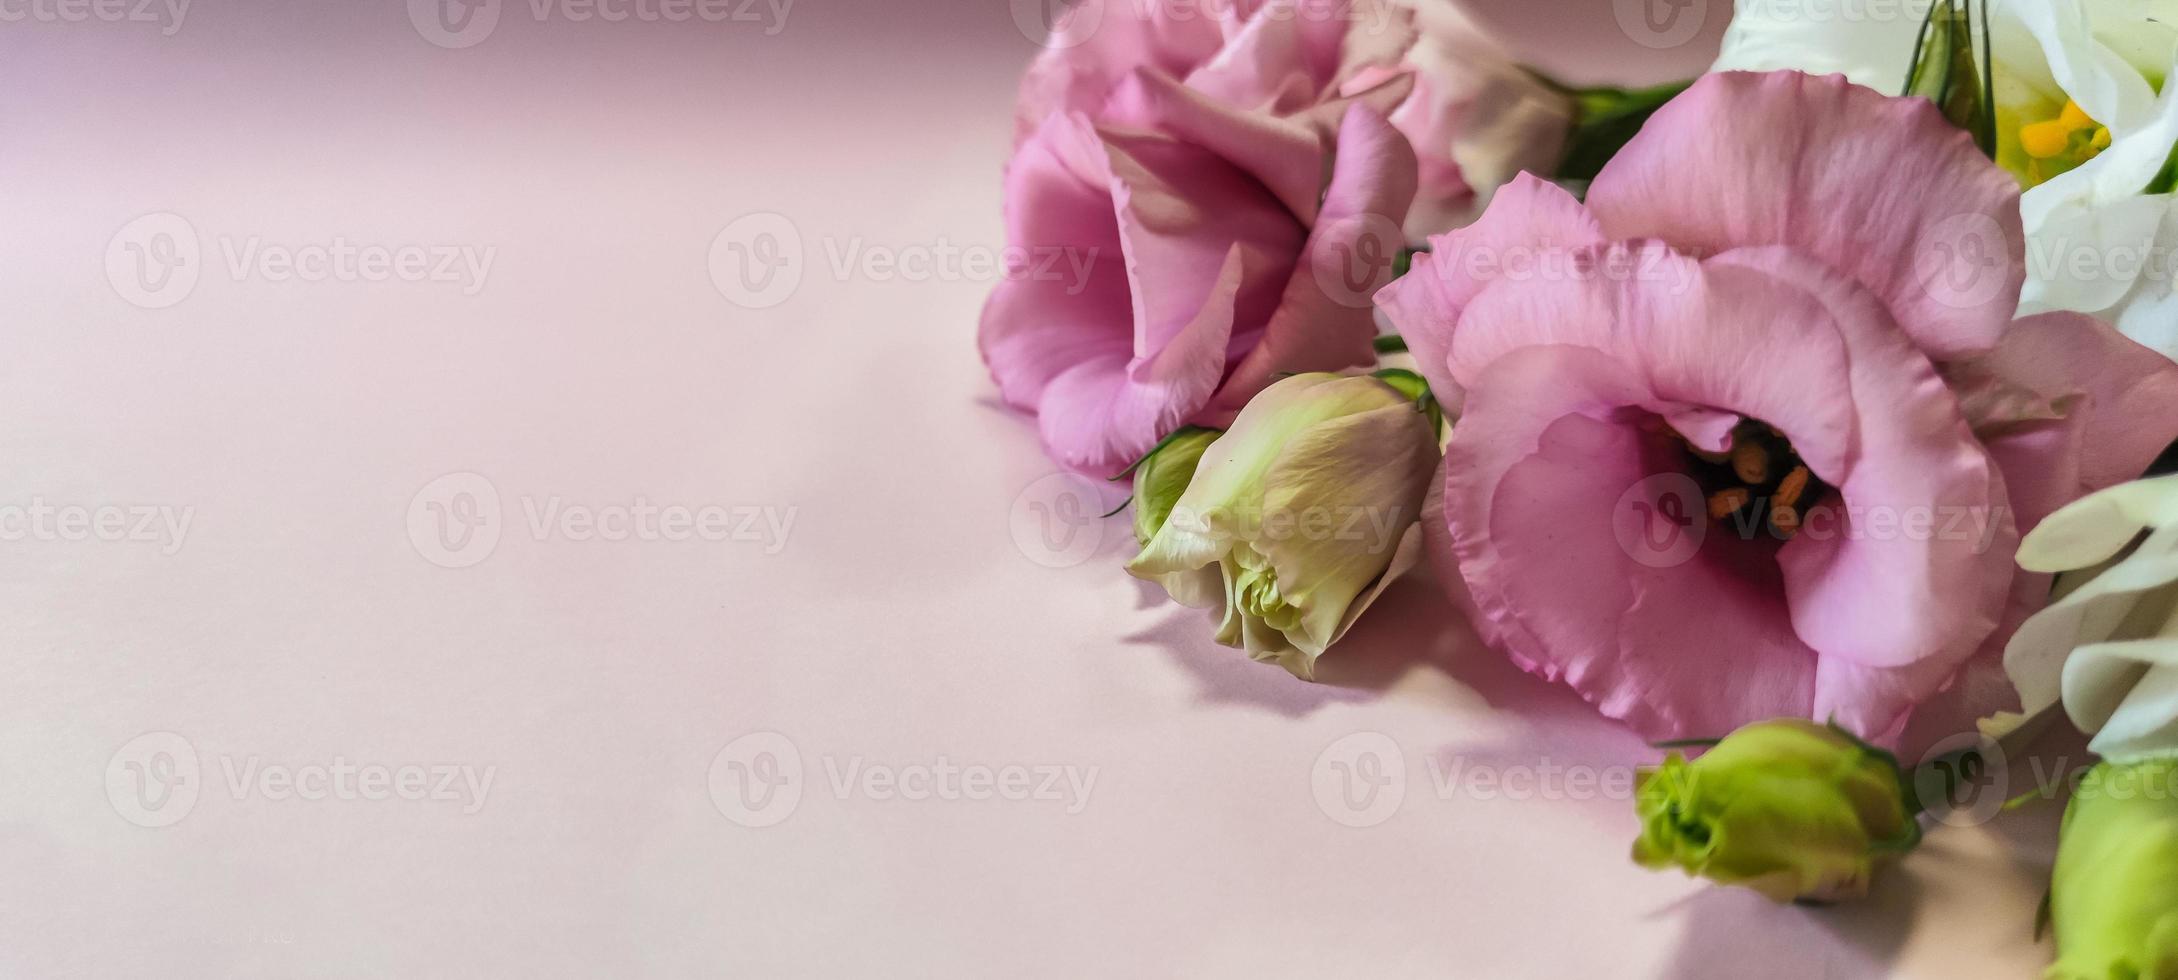 flores de rosas cor de rosa e brancas com copyspace foto